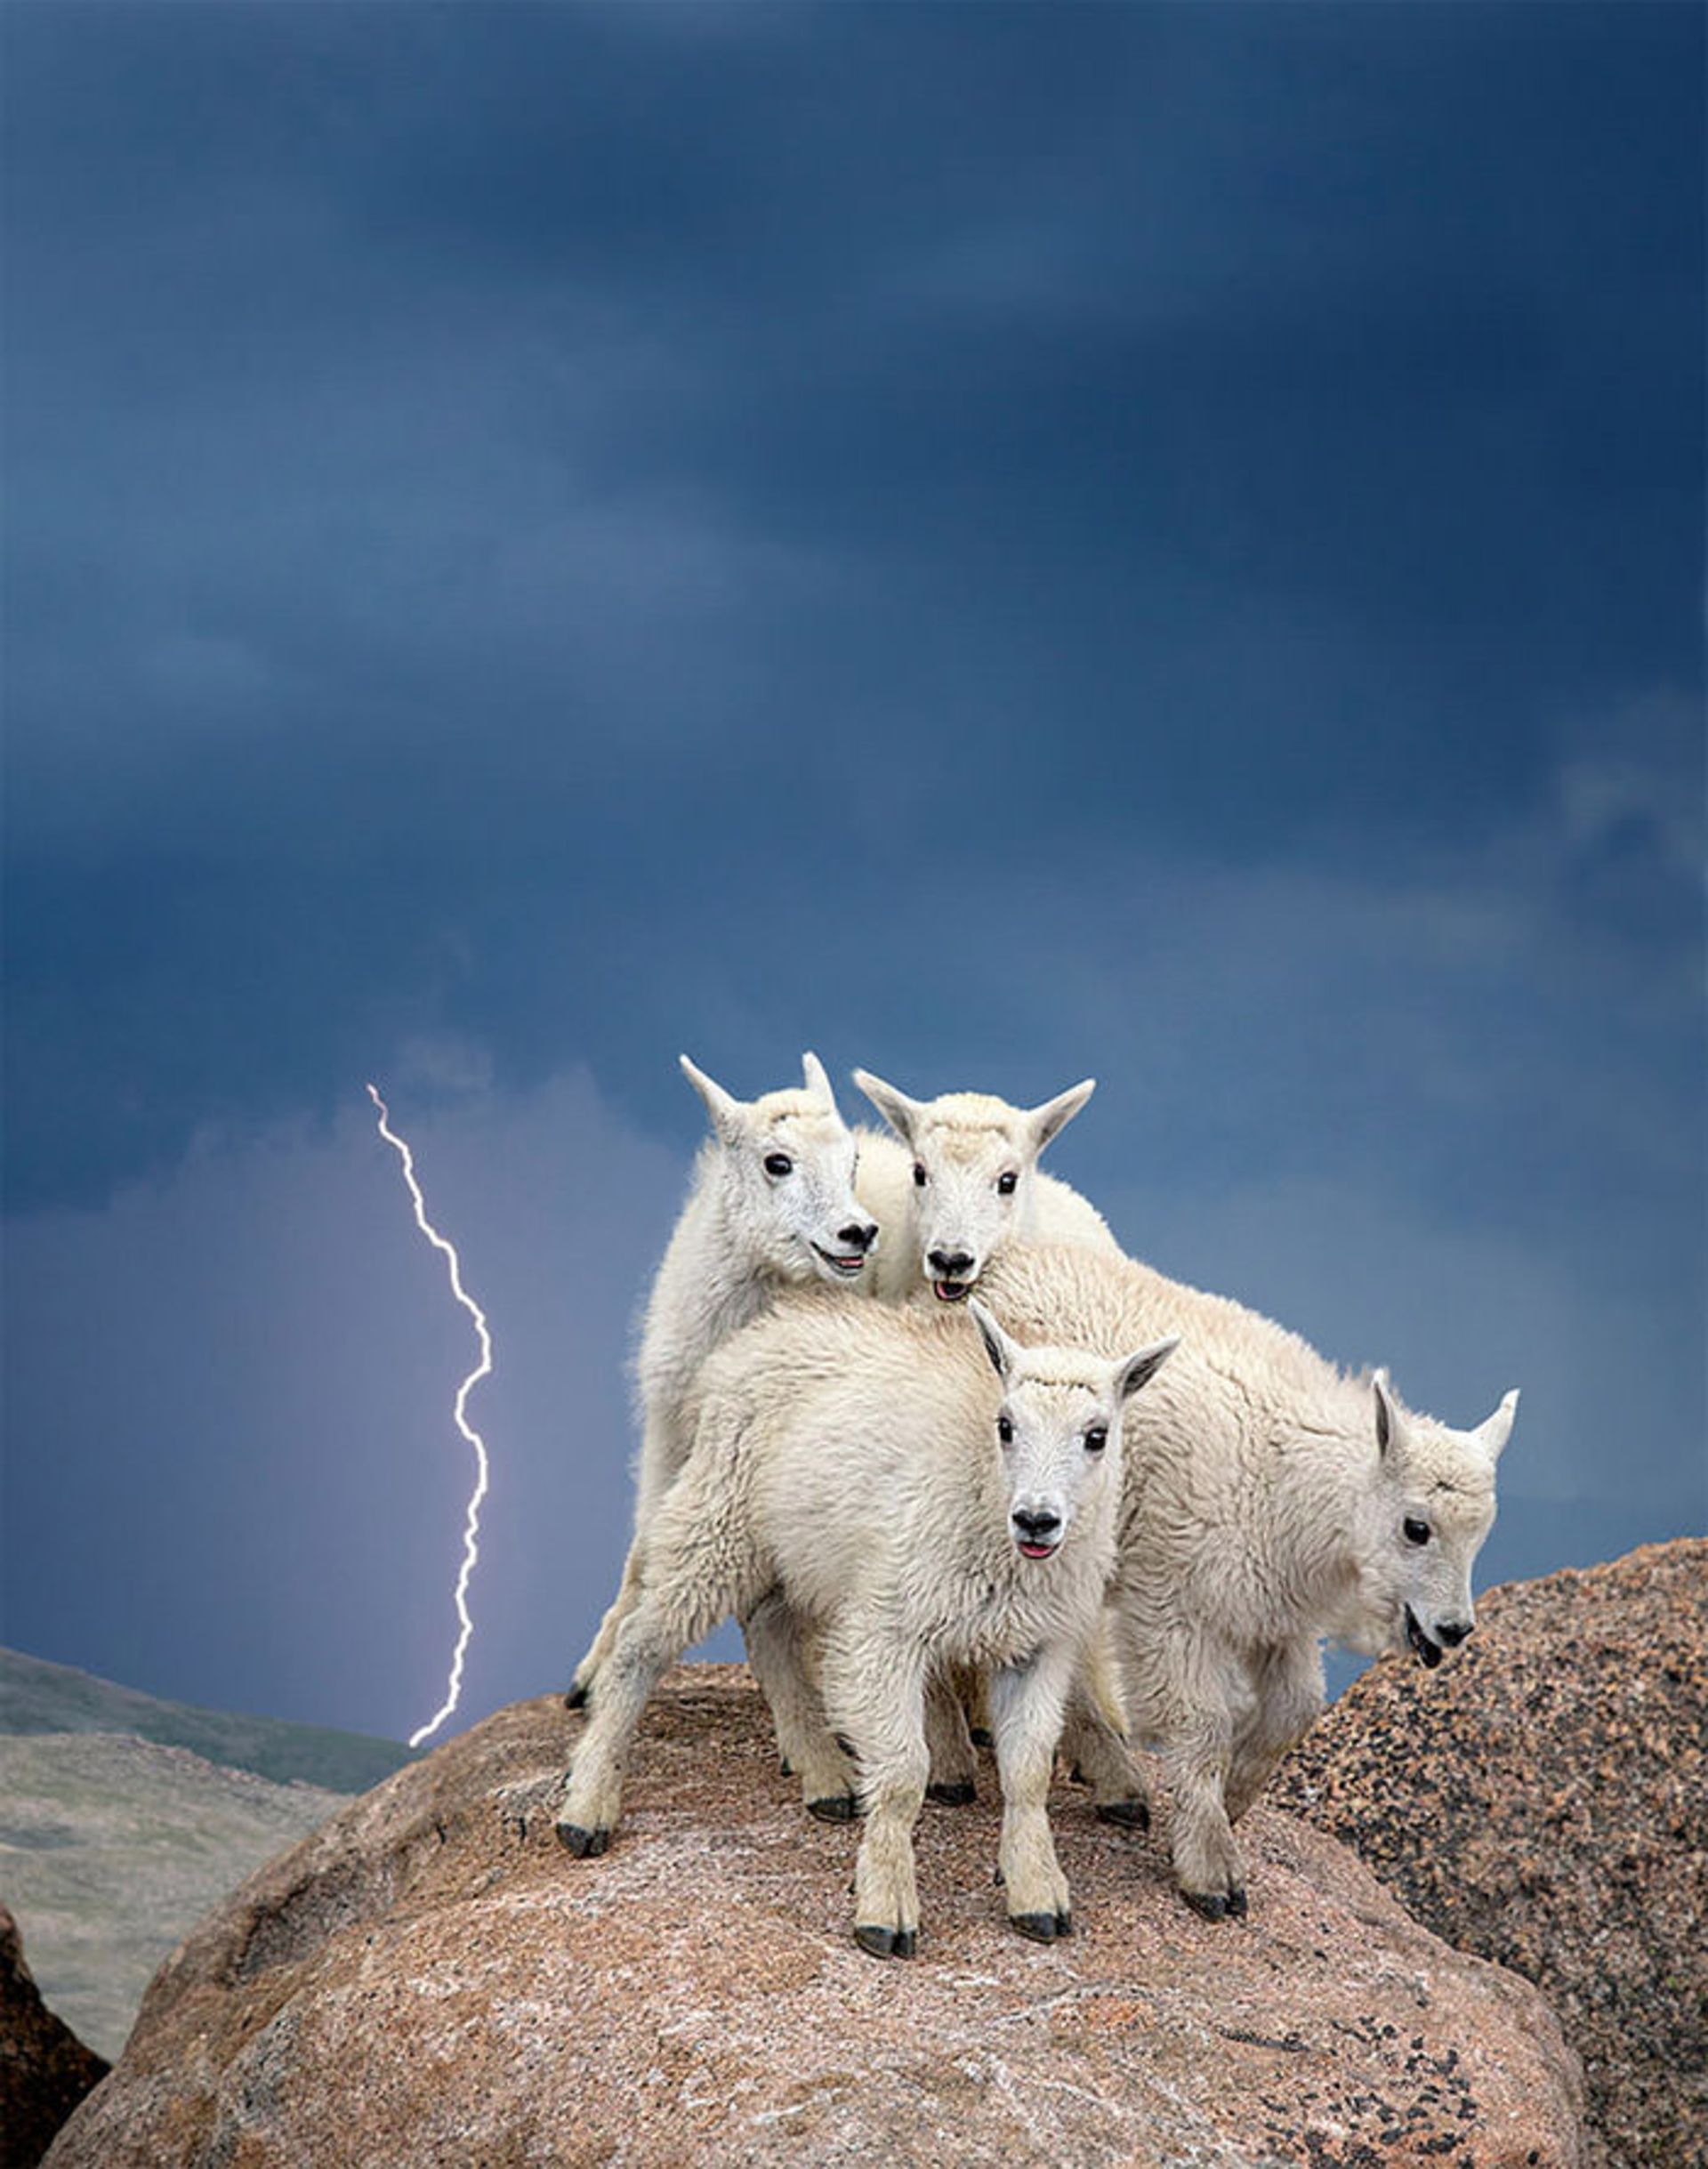 نمایشگاه عکاسی اسمیت سونیان در آمریکا با موضوع حیات وحش